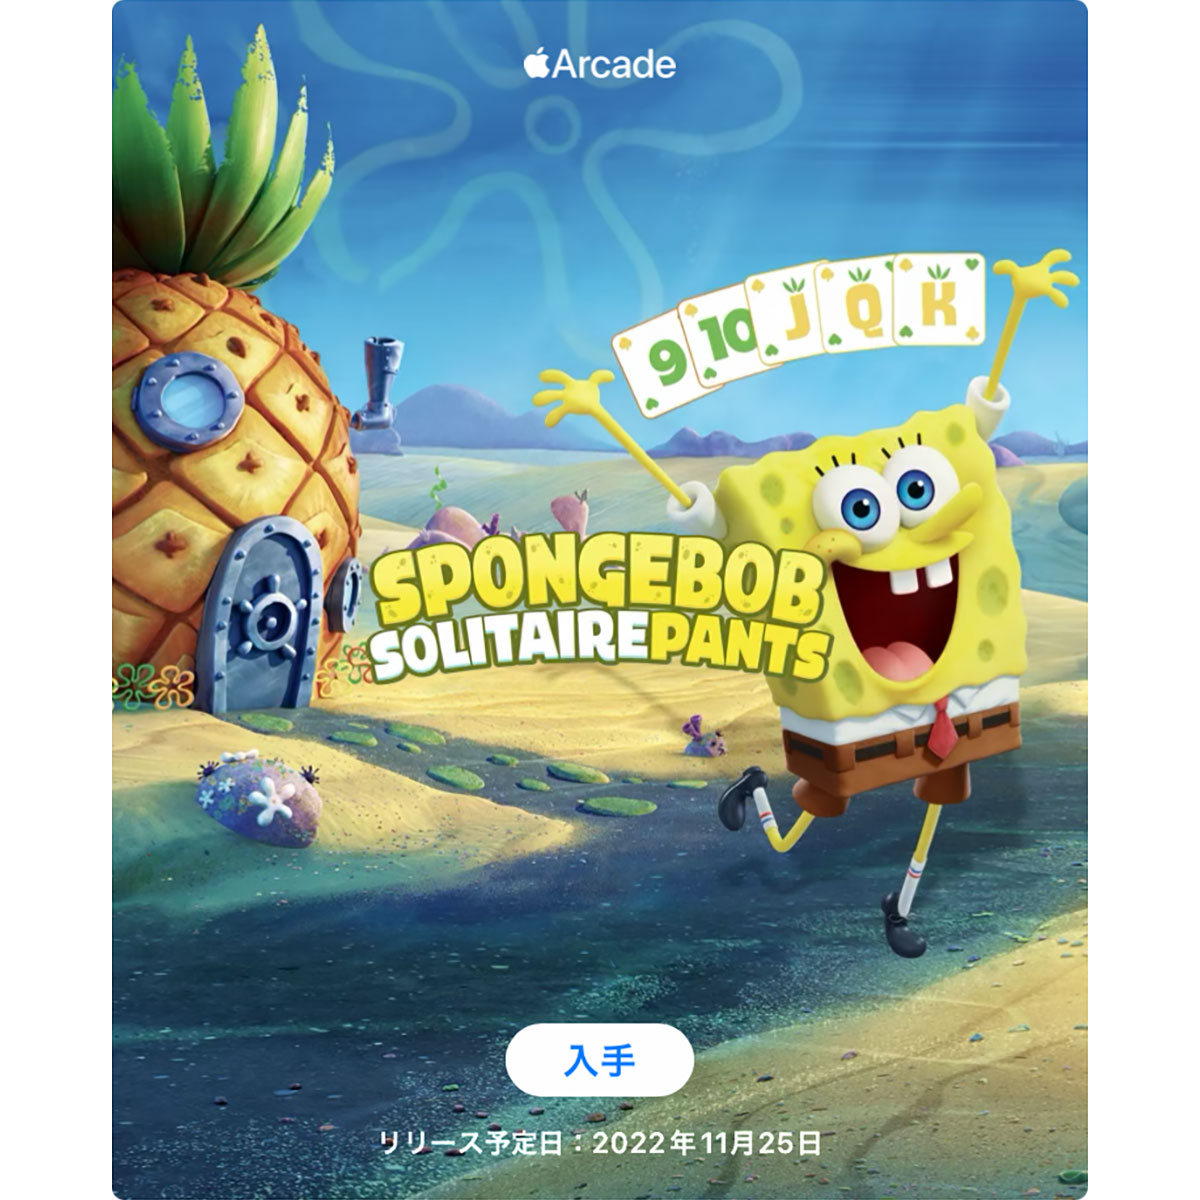 SpongeBob SolitairePants